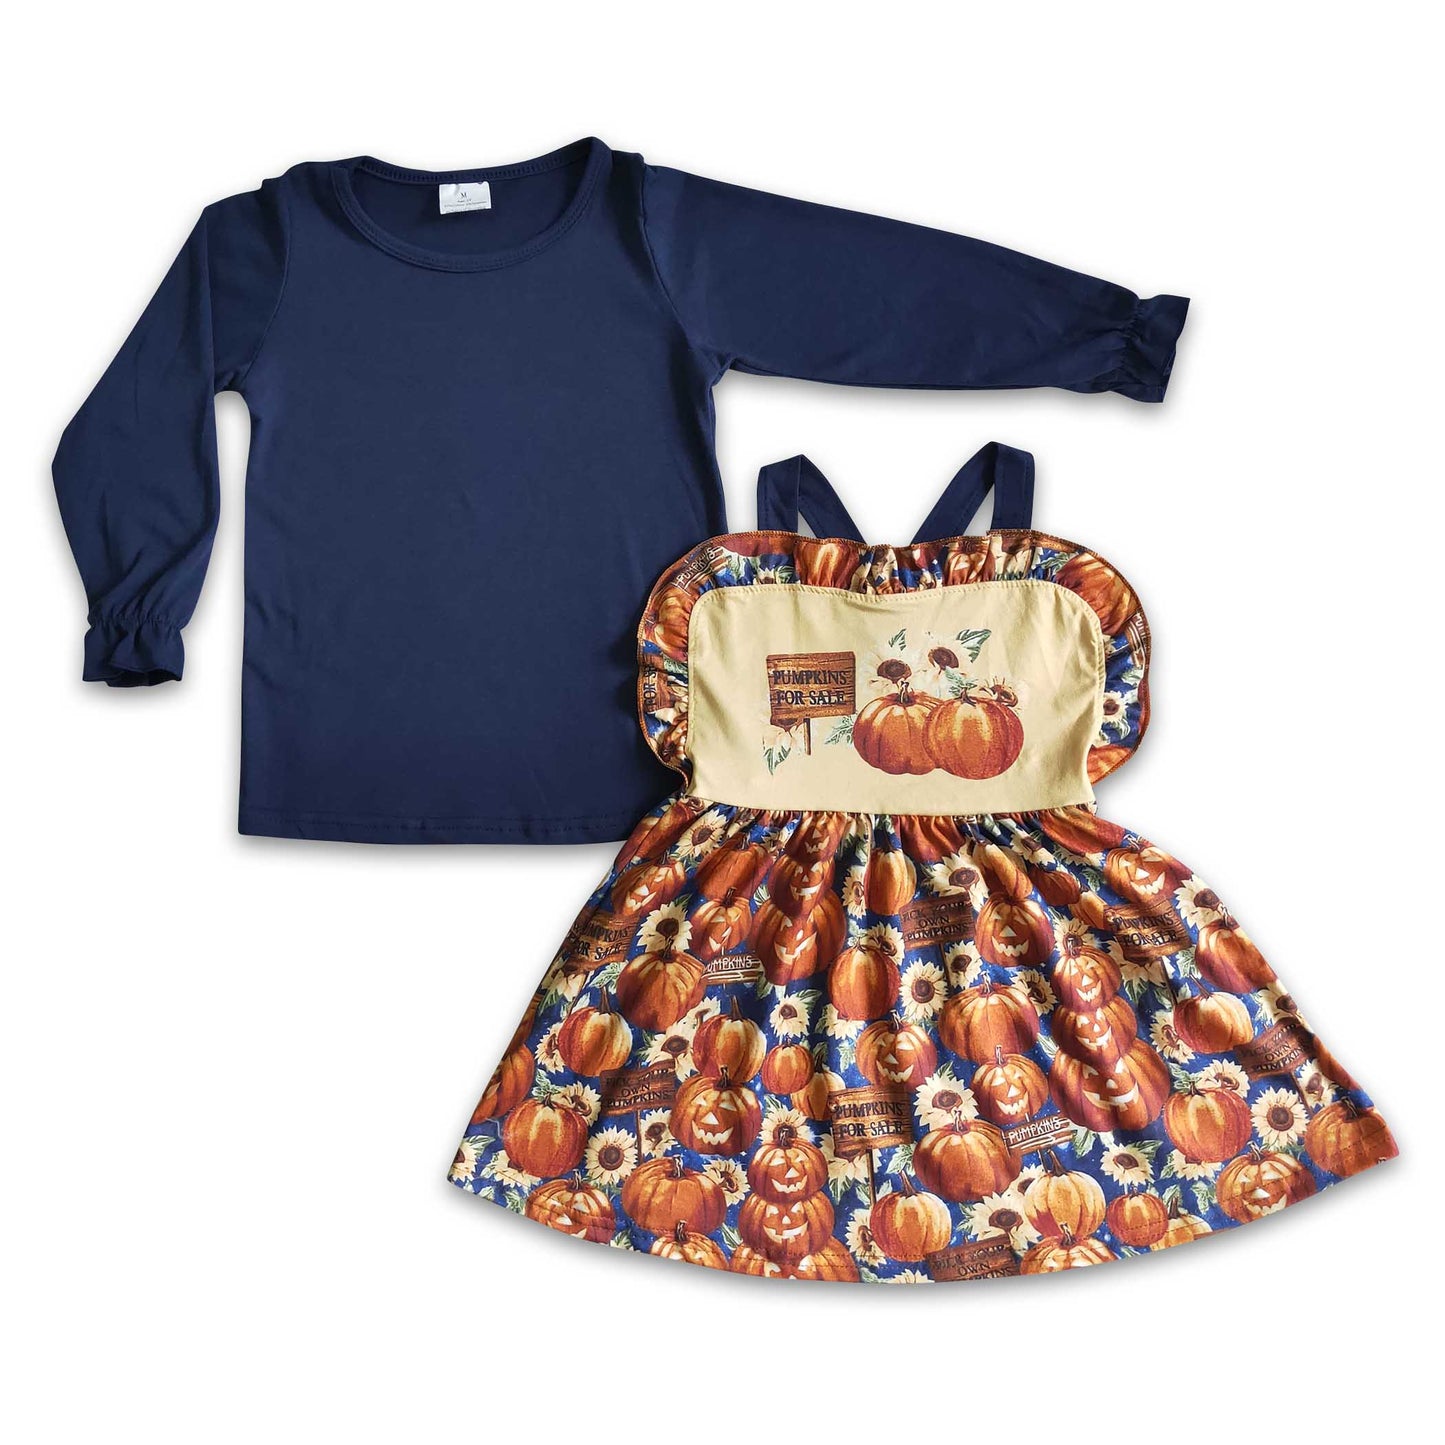 Pumpkin for sale suspender match blue shirt baby fall set